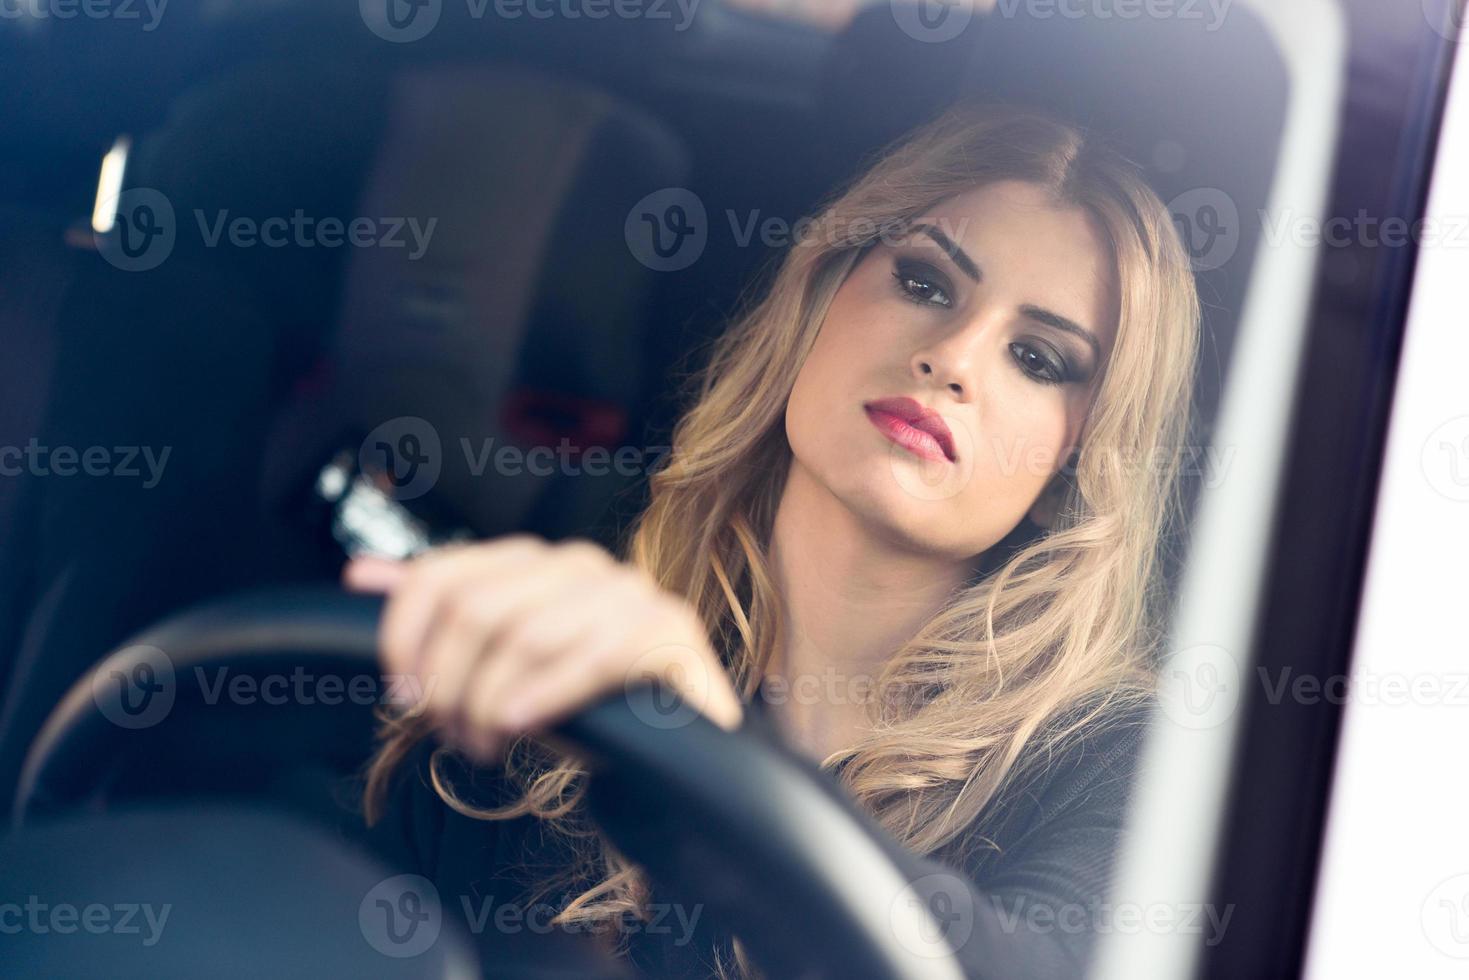 blondie jonge vrouw rijdt in een sportwagen foto